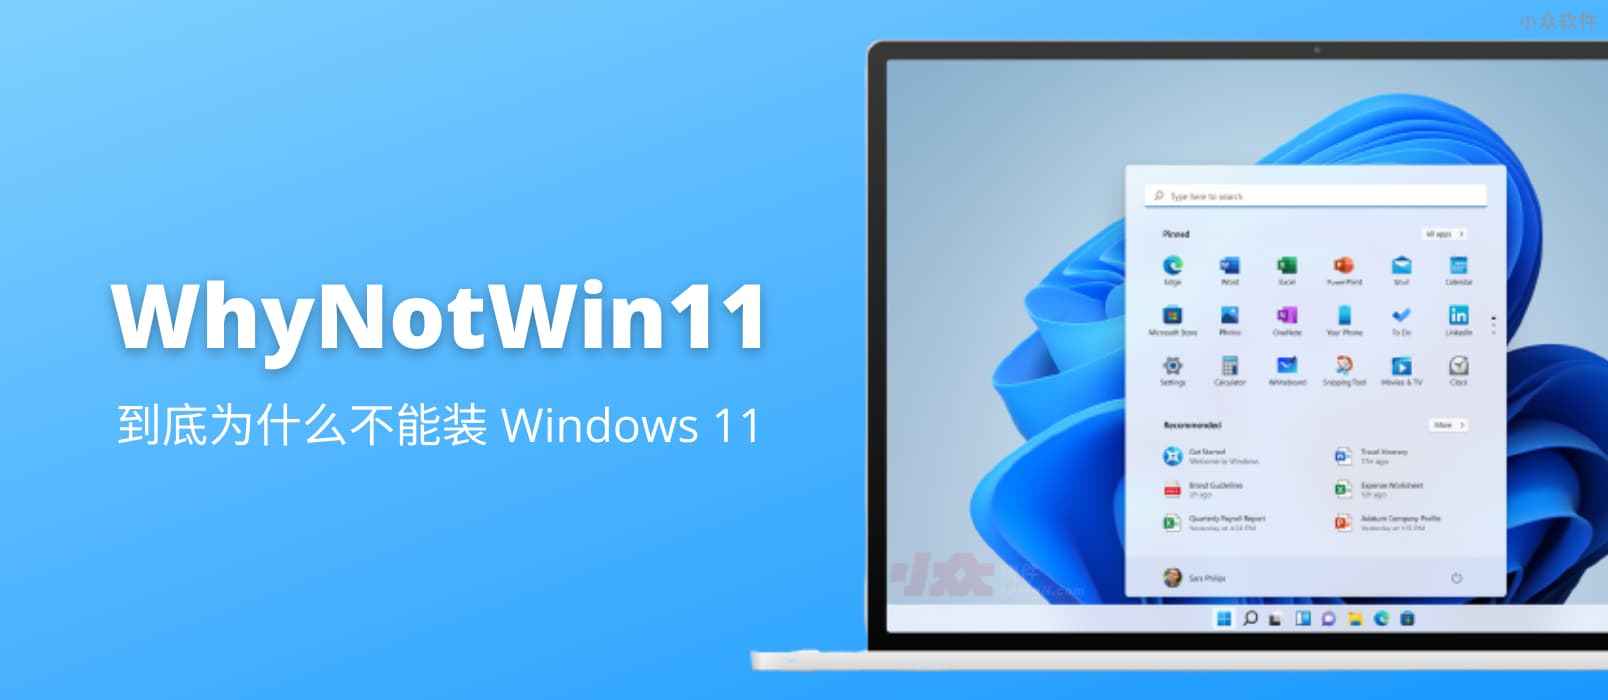 WhyNotWin11 – 到底为什么不能安装 Windows 11？第三方检测工具告诉你还缺什么